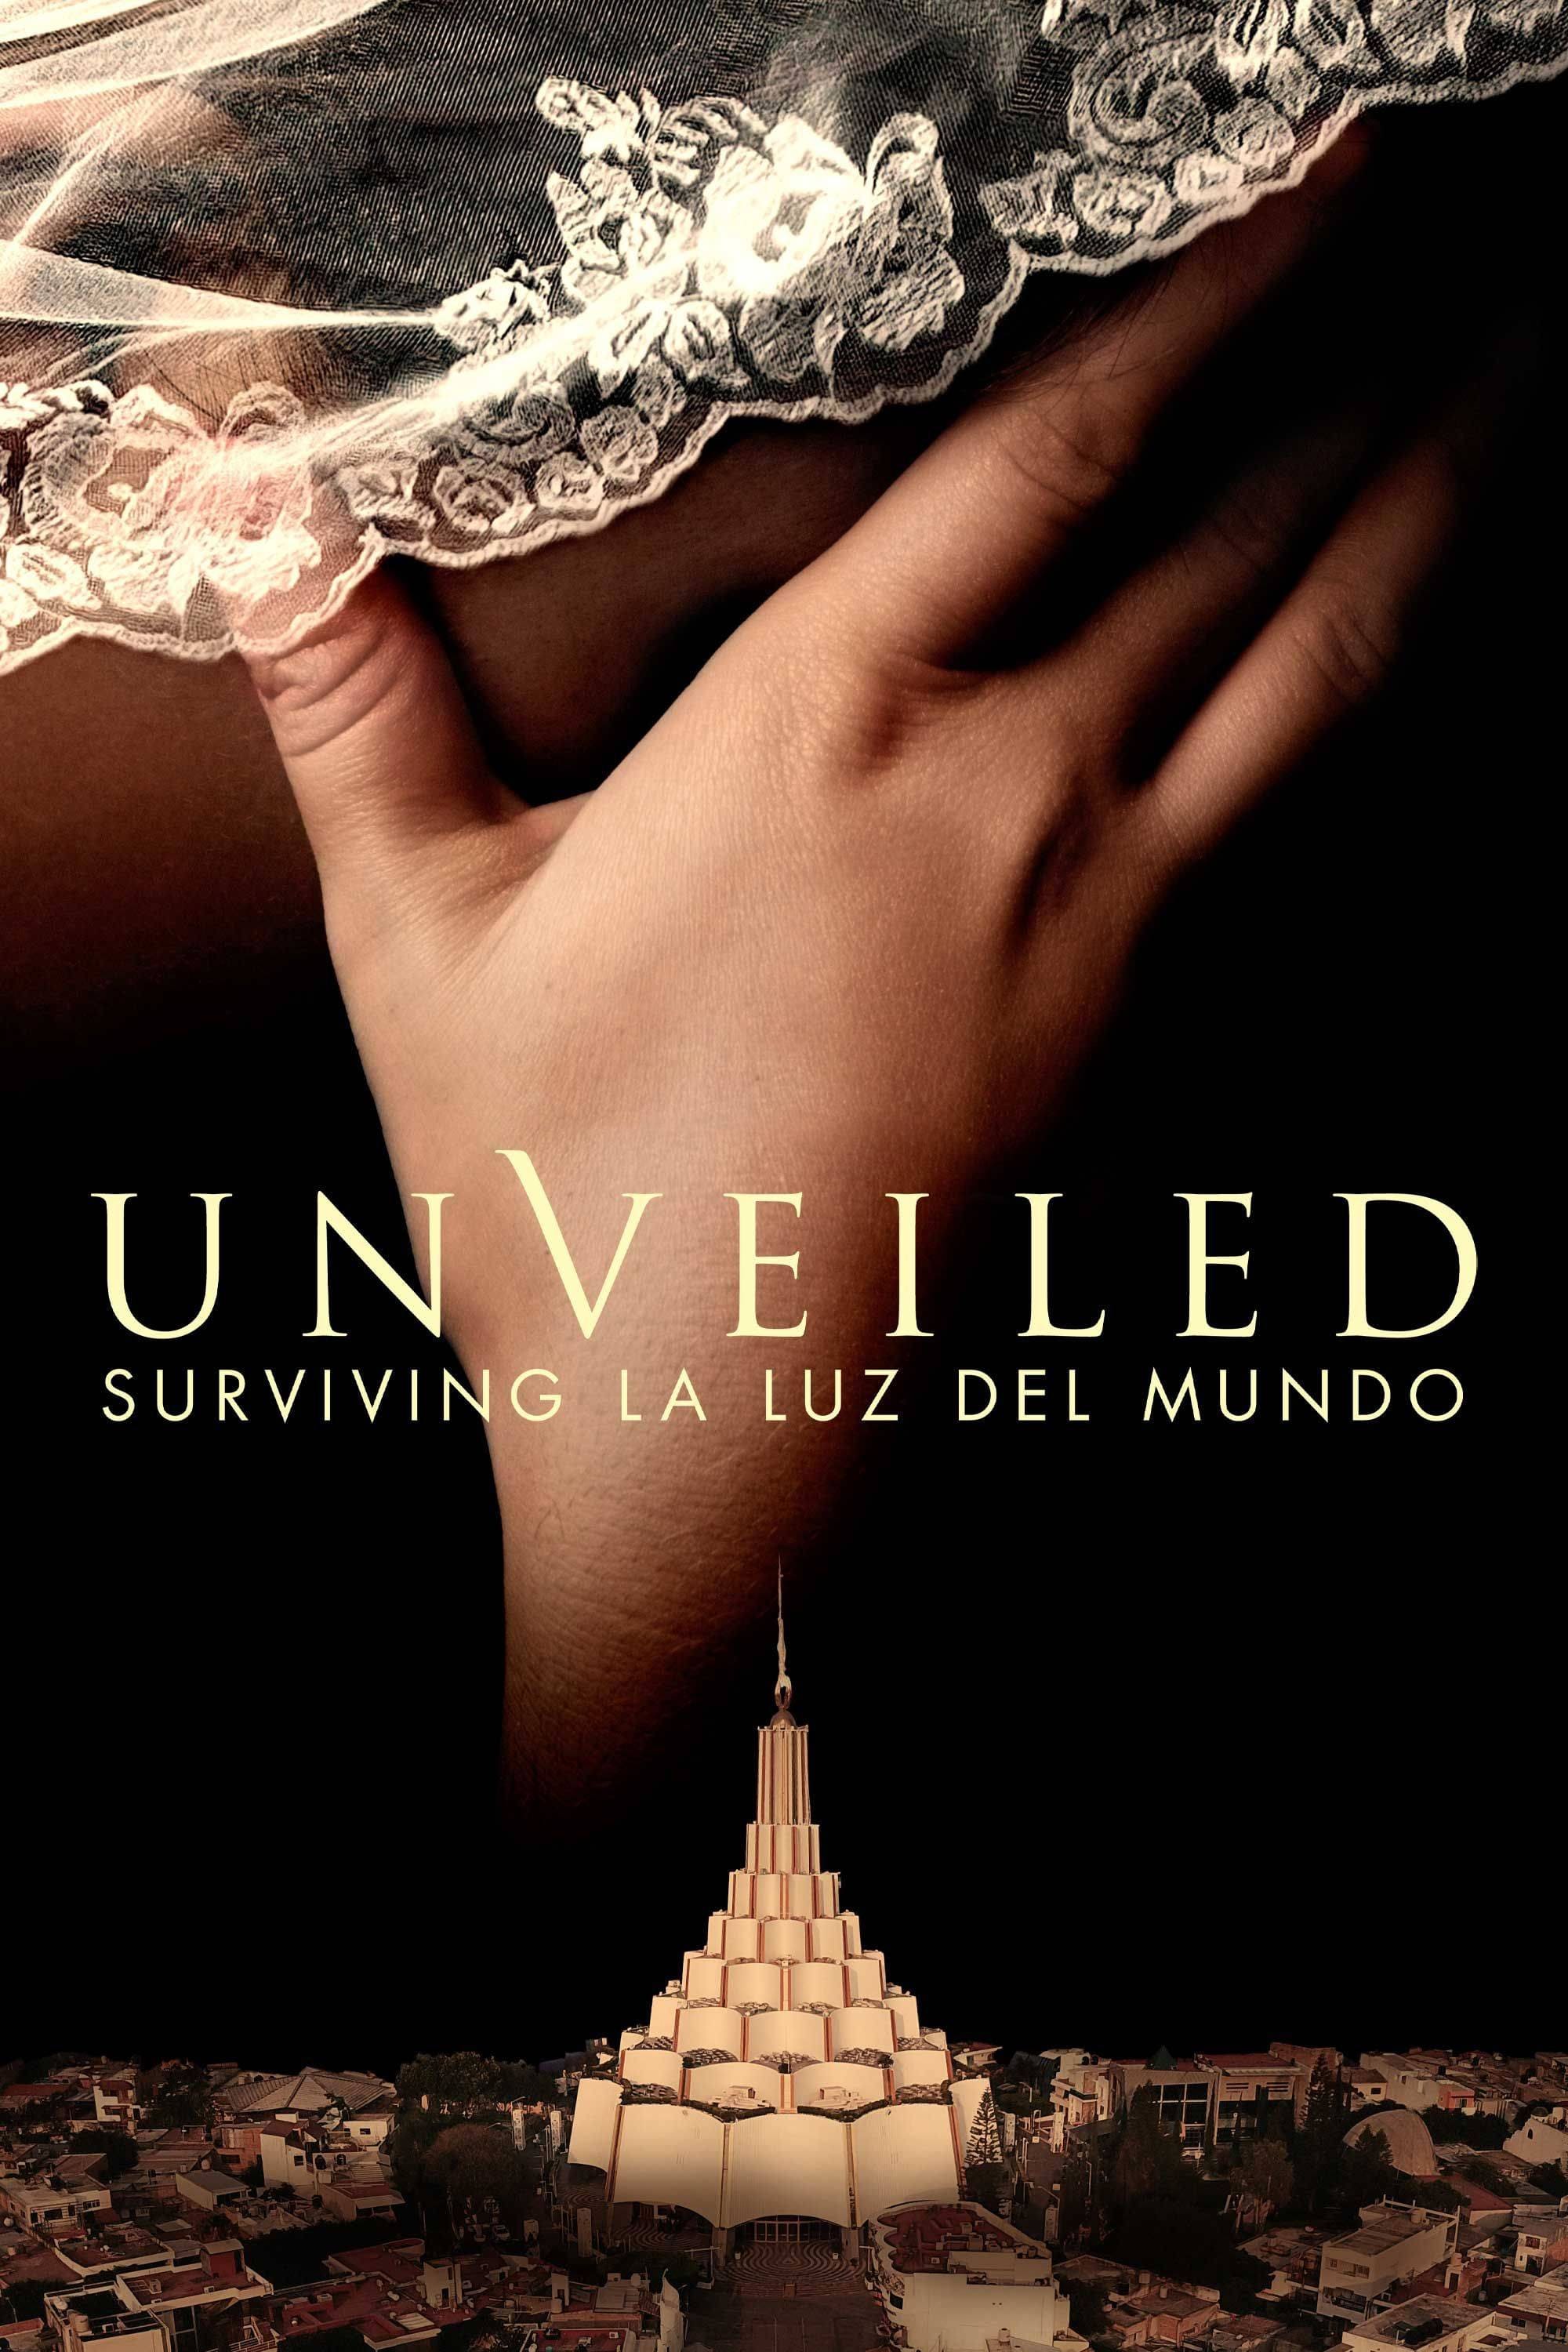 Unveiled: Surviving La Luz del Mundo TV Shows About Abuse